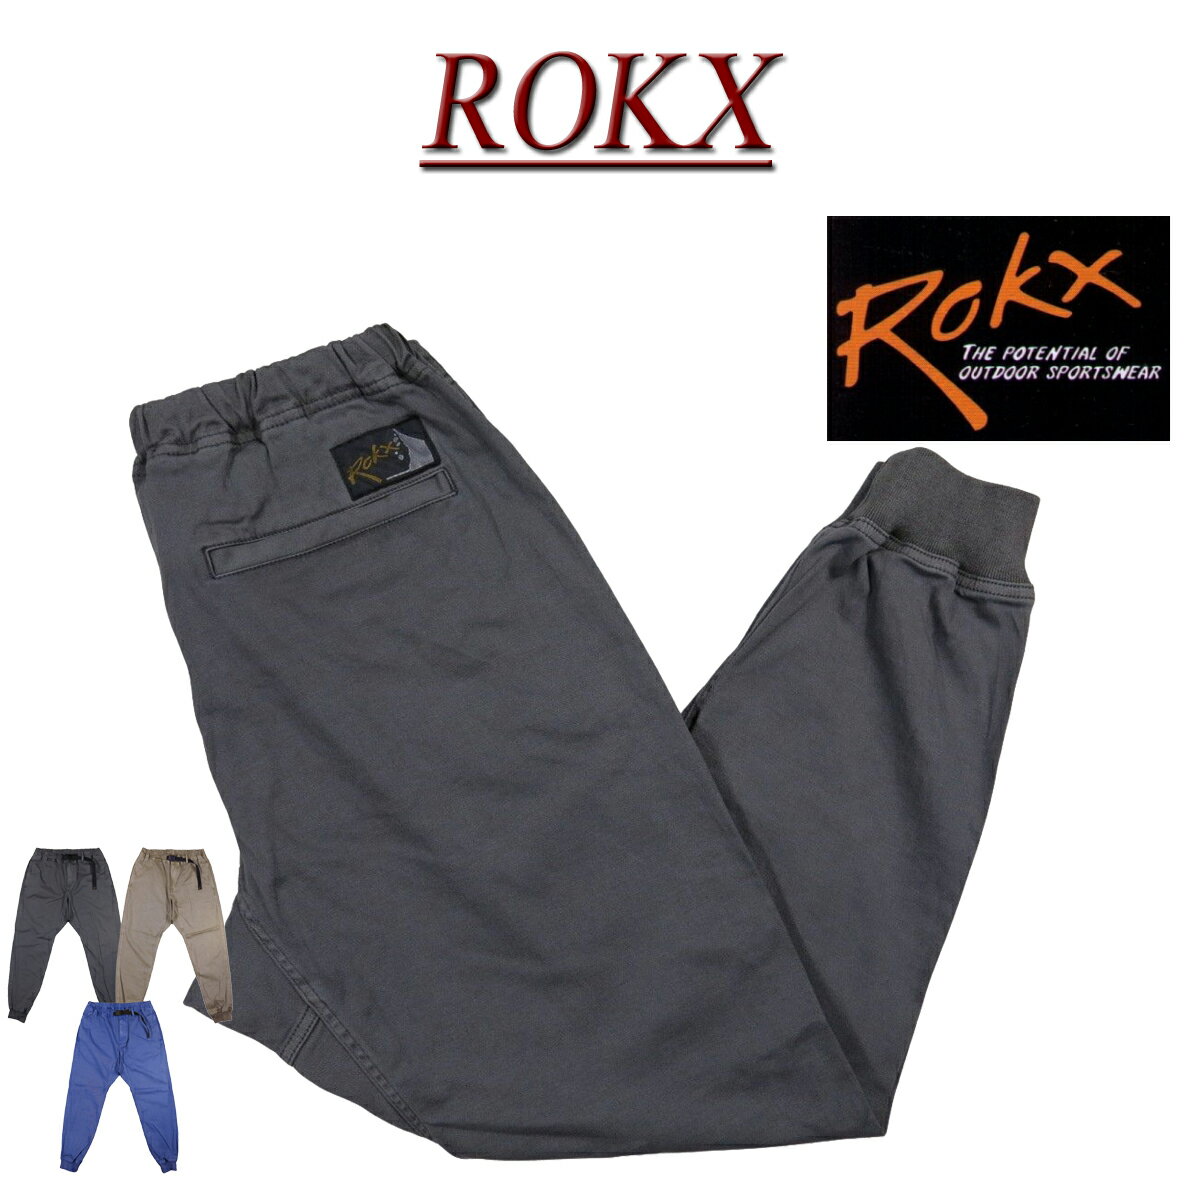 【定番 3色4サイズ】 ry561 新品 ROKX ロックス MG CLIMBING PANT エムジー アスレチック クライミングパンツ RXMS201067 メンズ アメカジ ATHLETIC PANTS ボルダリング 【smtb-kd】